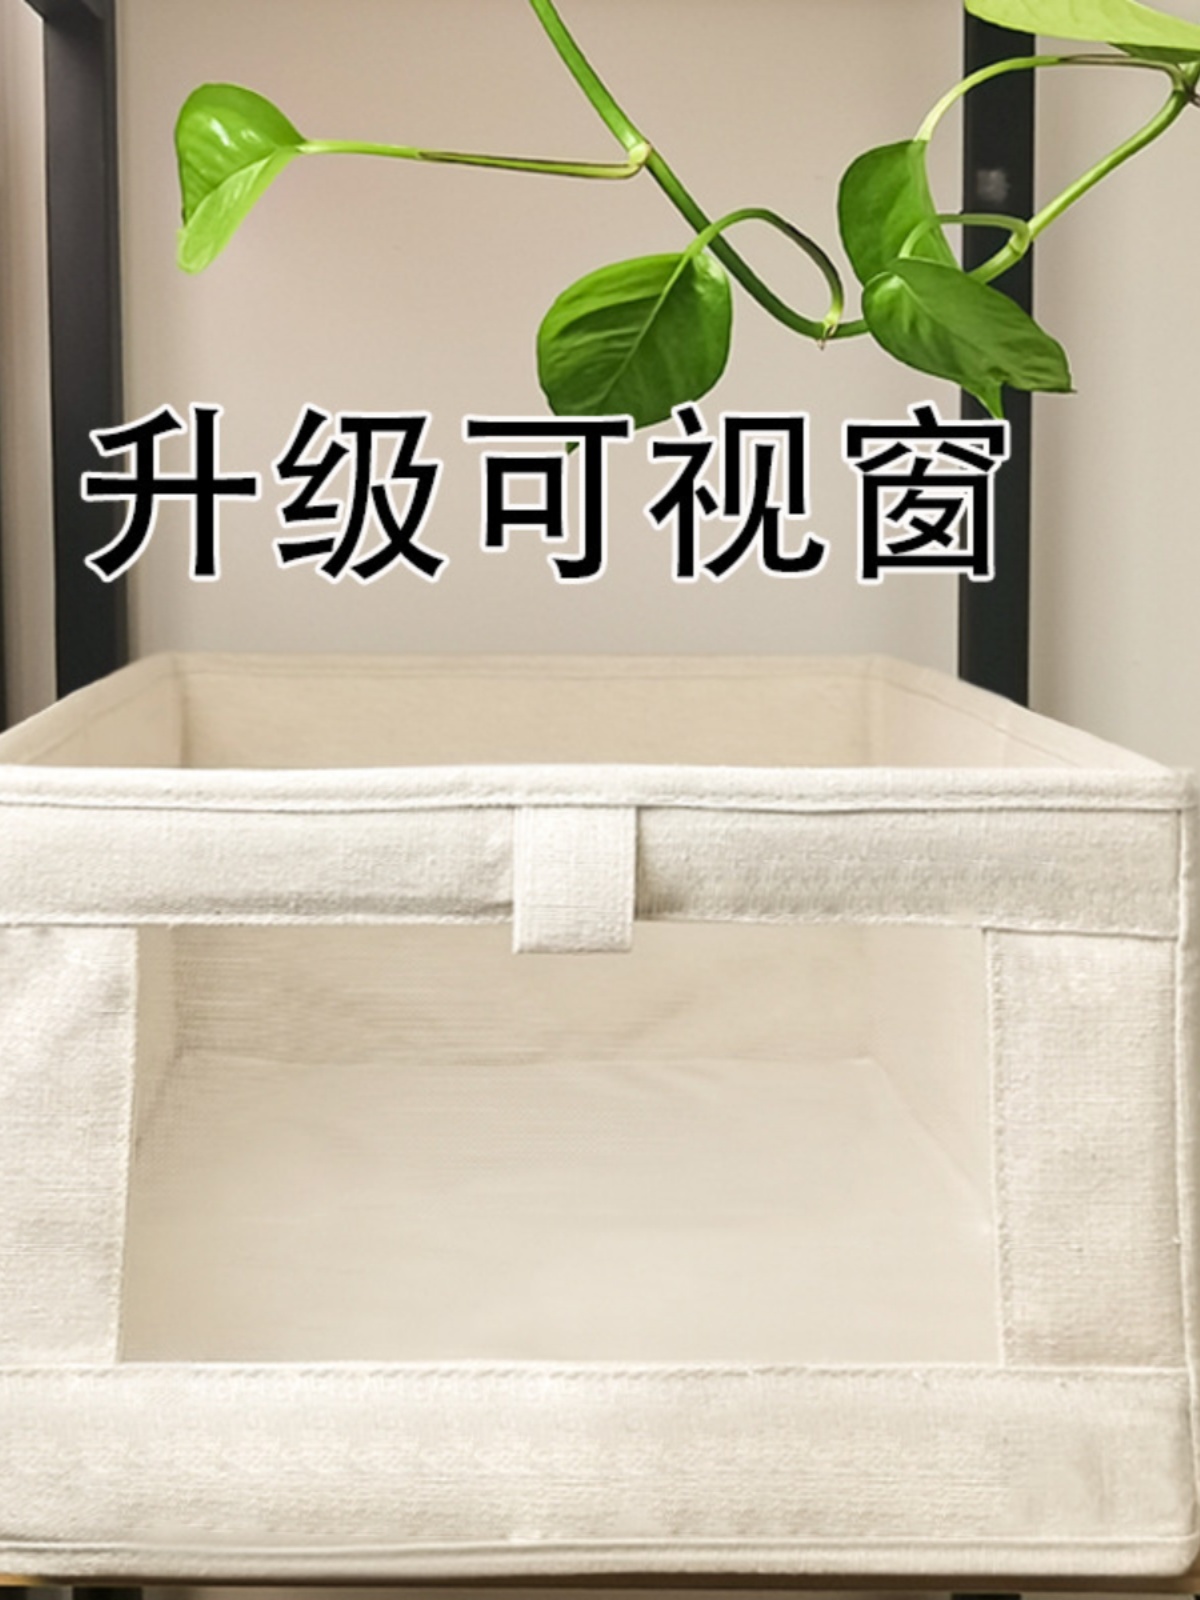 日式風情收納箱 棉麻材質 多種規格與款式 讓您輕鬆整理衣物